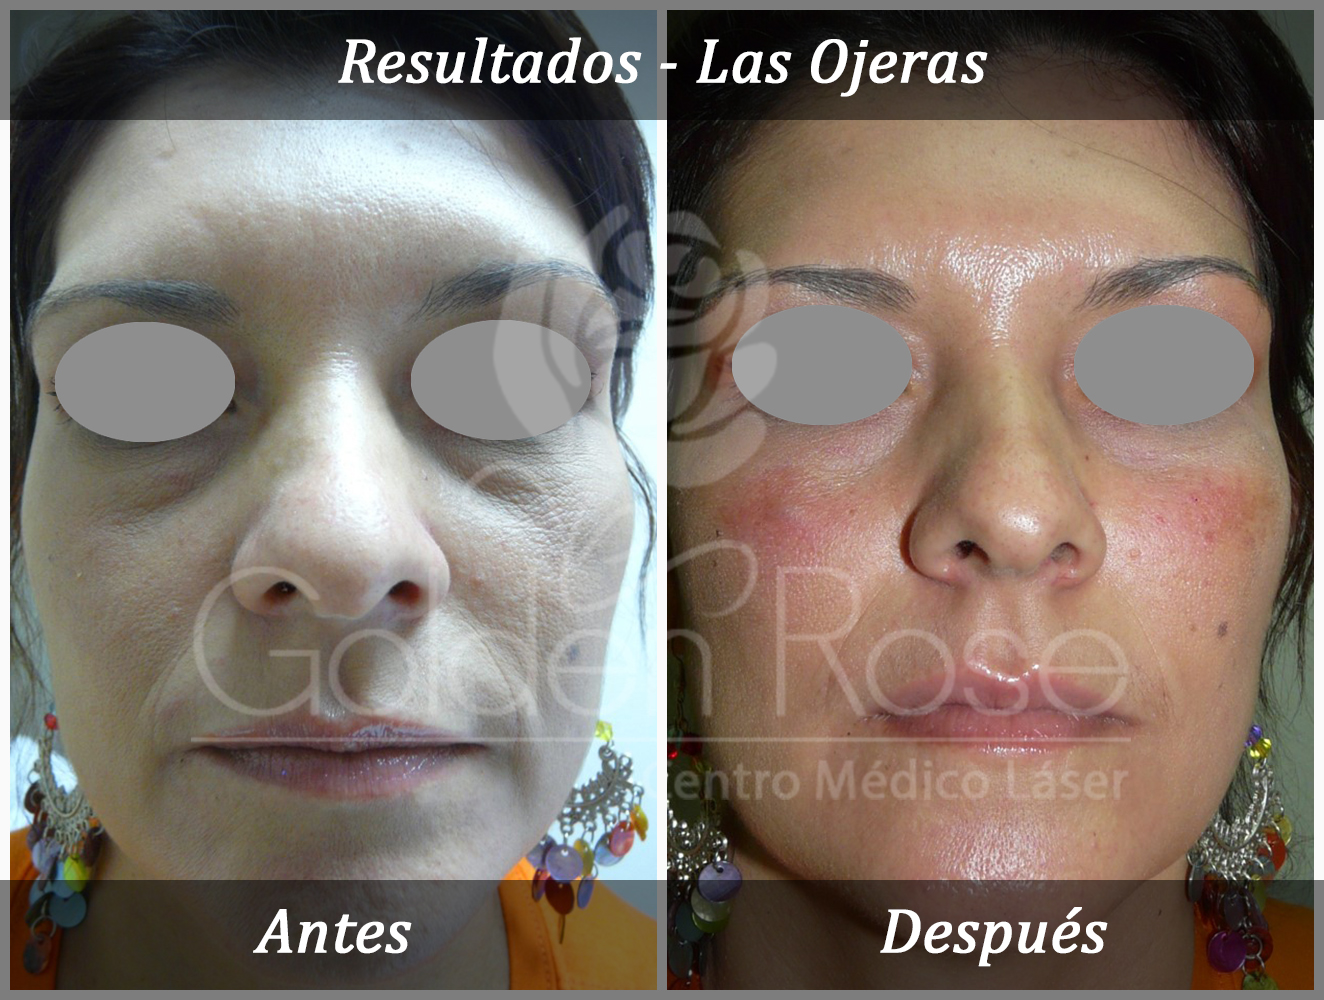 Results - Las Ojeras 2.jpg